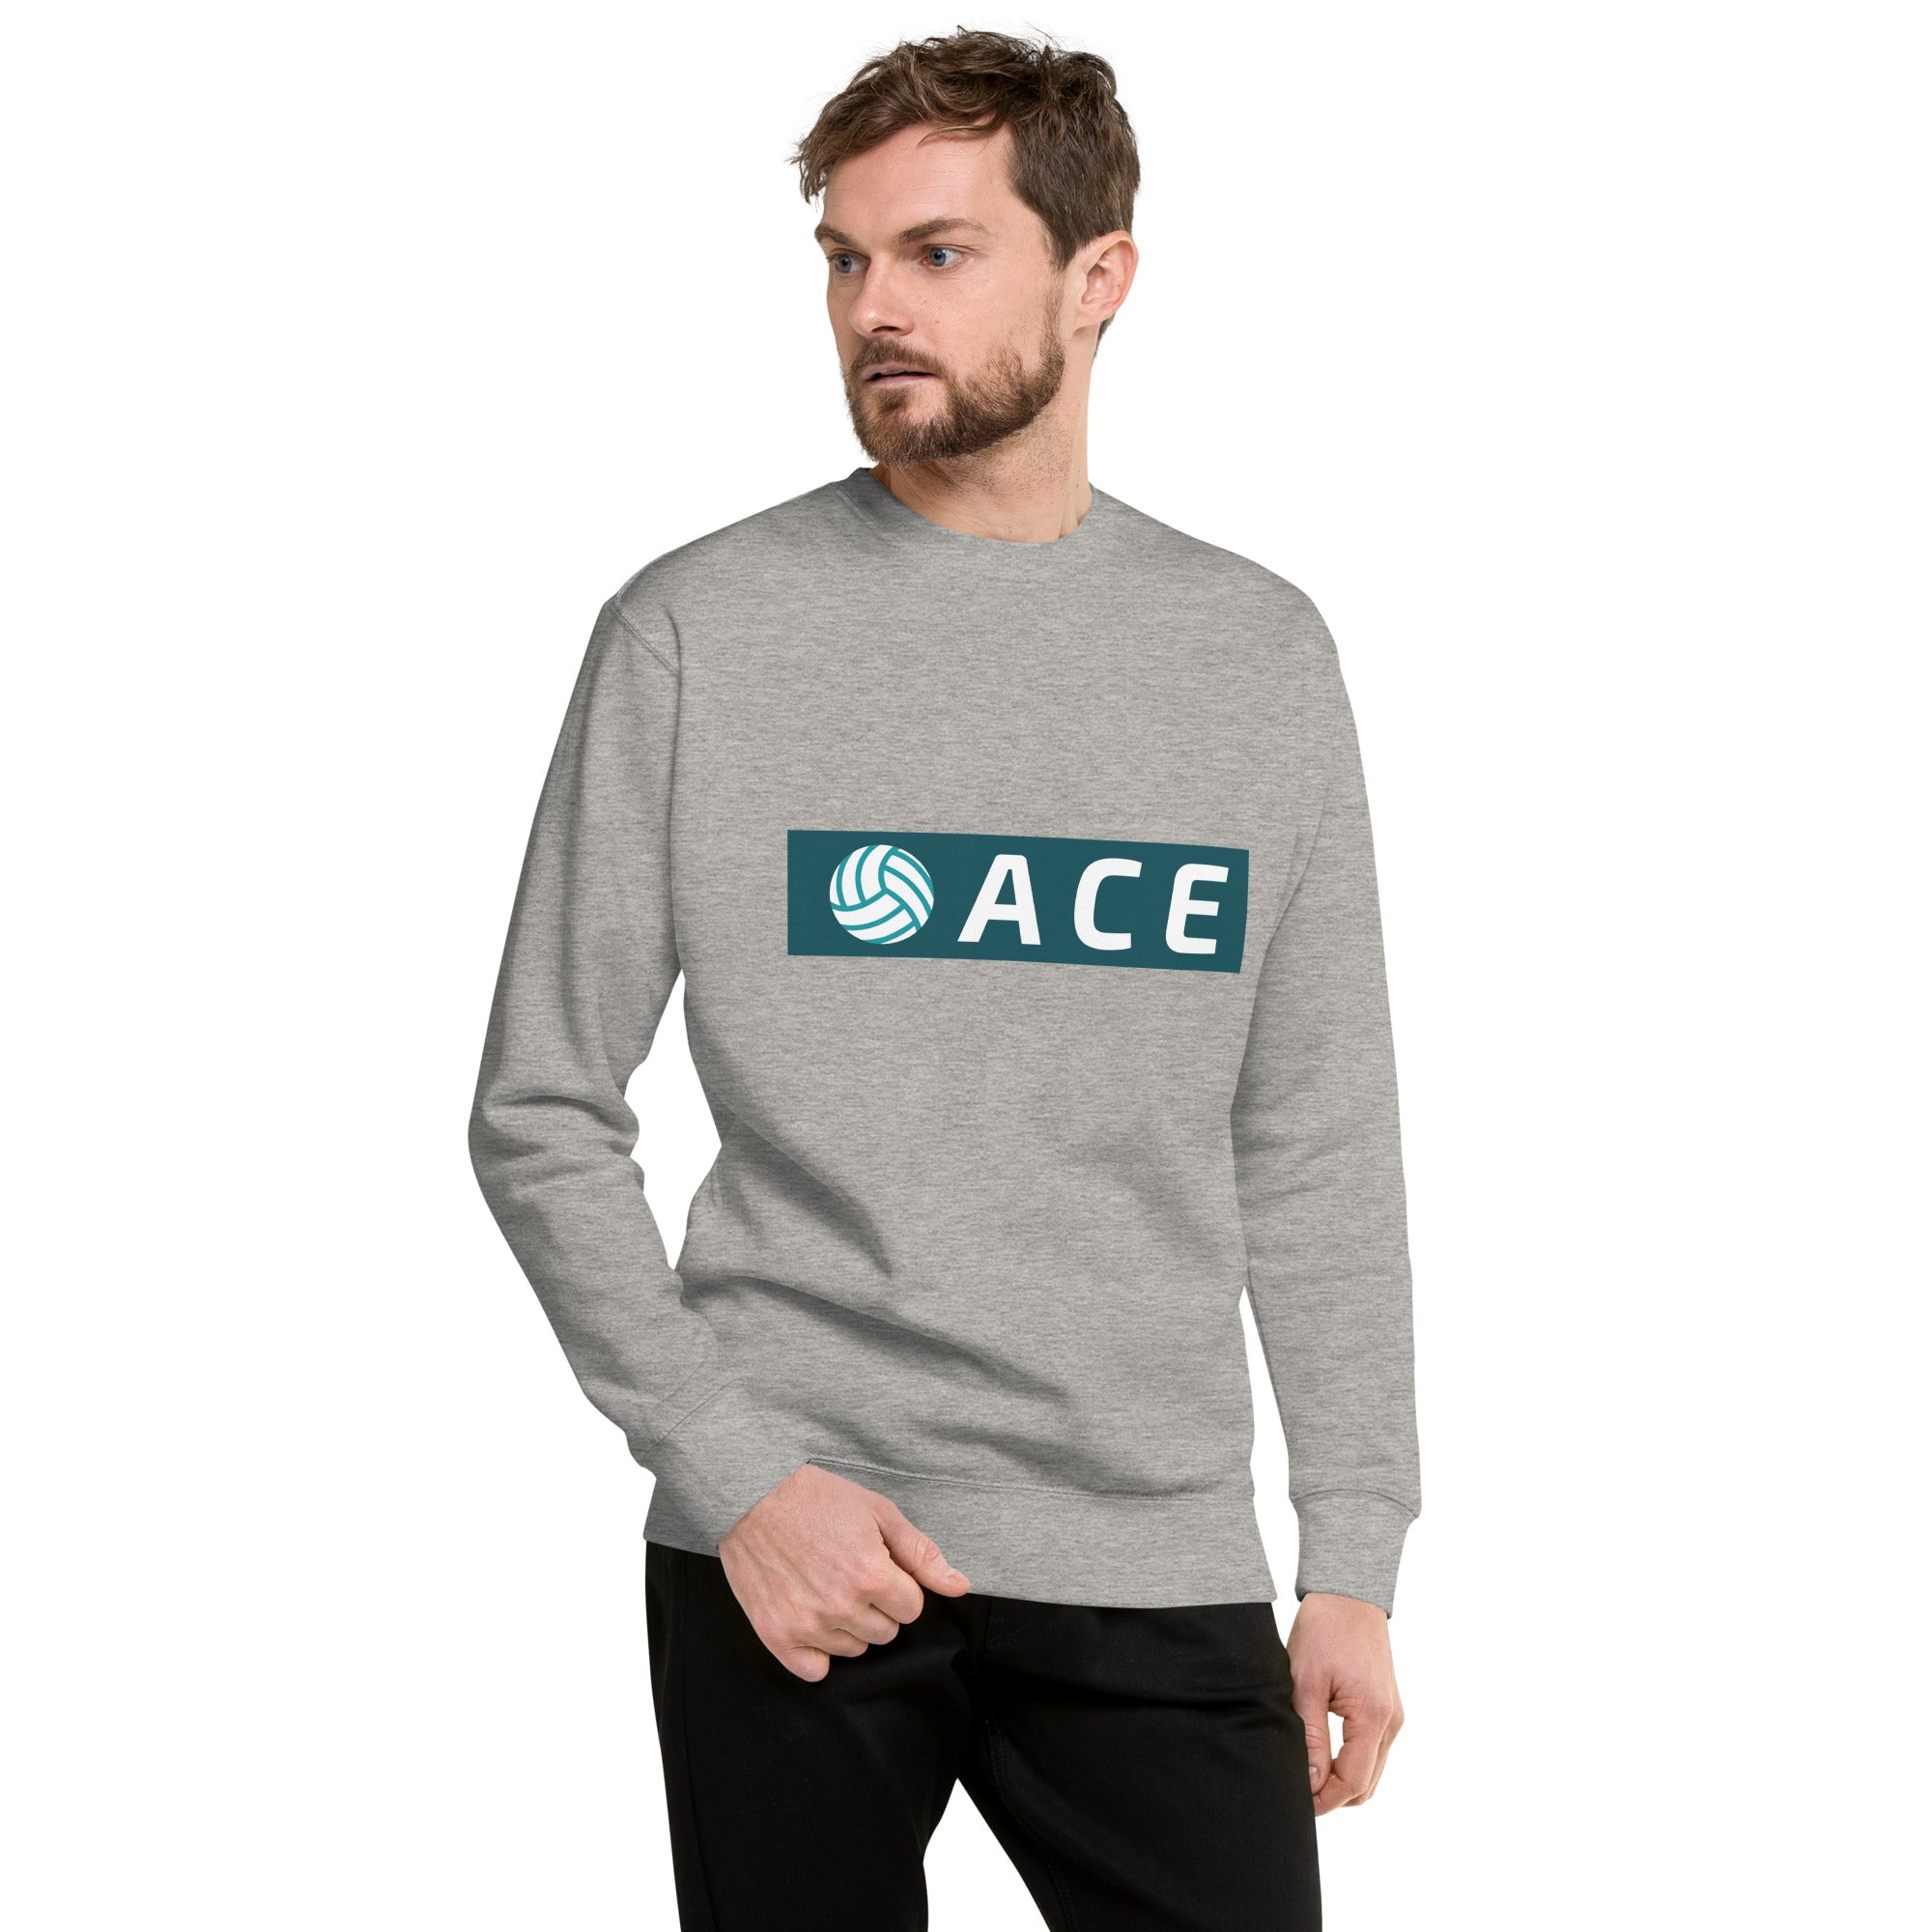 Ace Heavy Crew Men's Sweatshirt